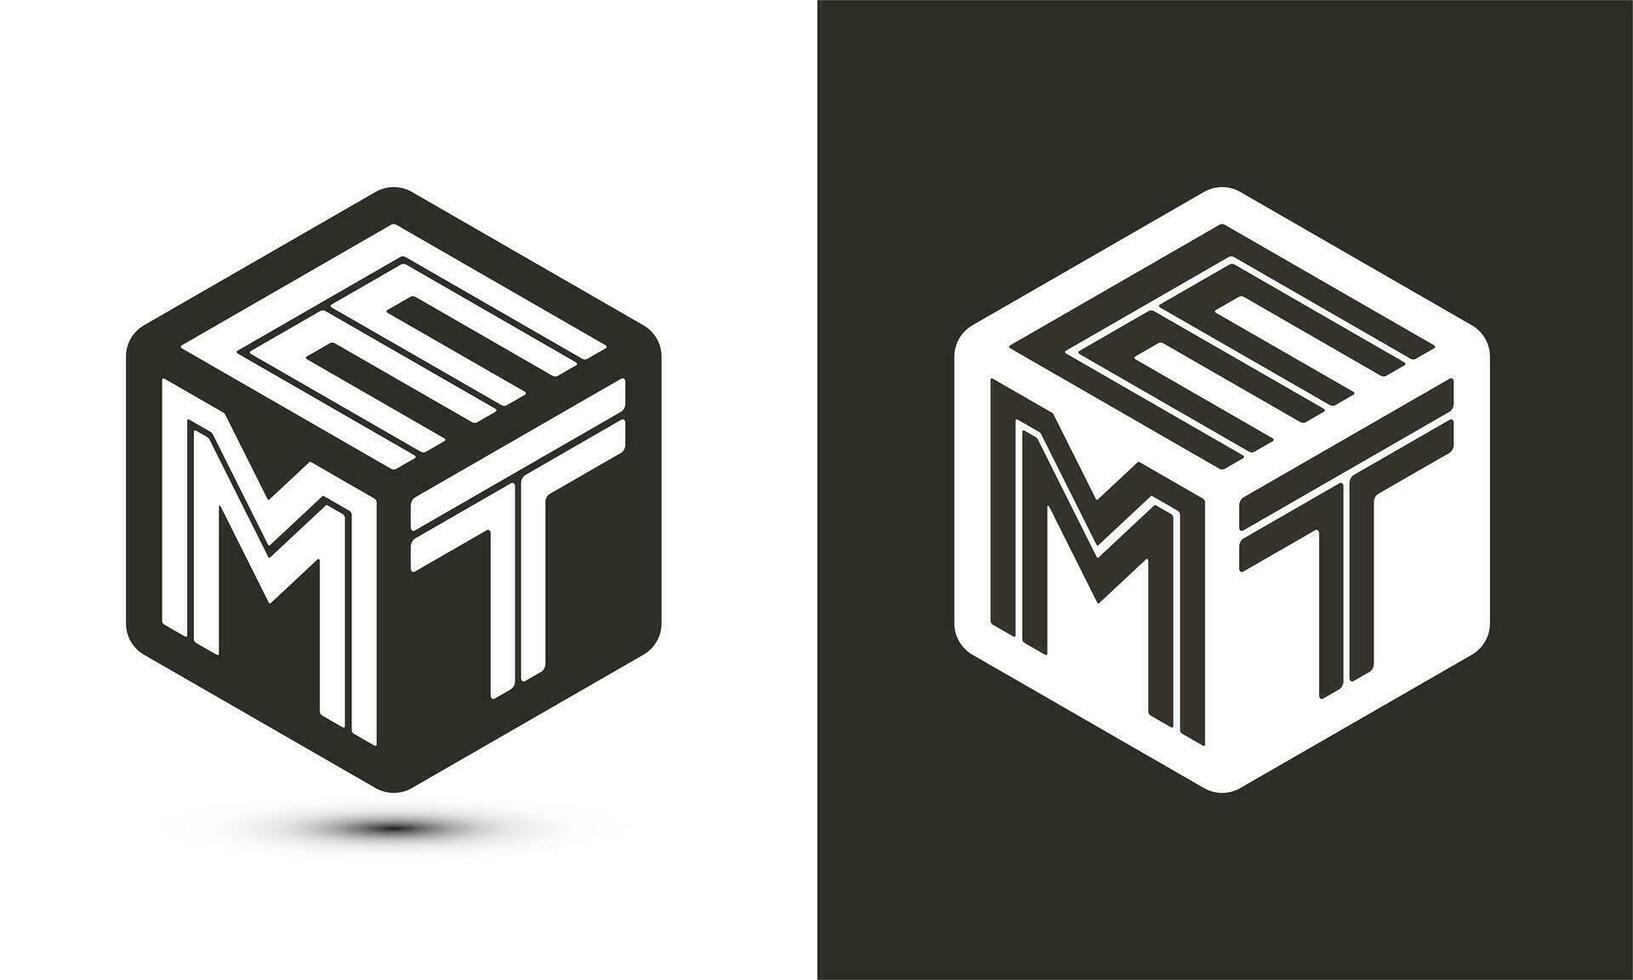 emt lettre logo conception avec illustrateur cube logo, vecteur logo moderne alphabet Police de caractère chevauchement style.